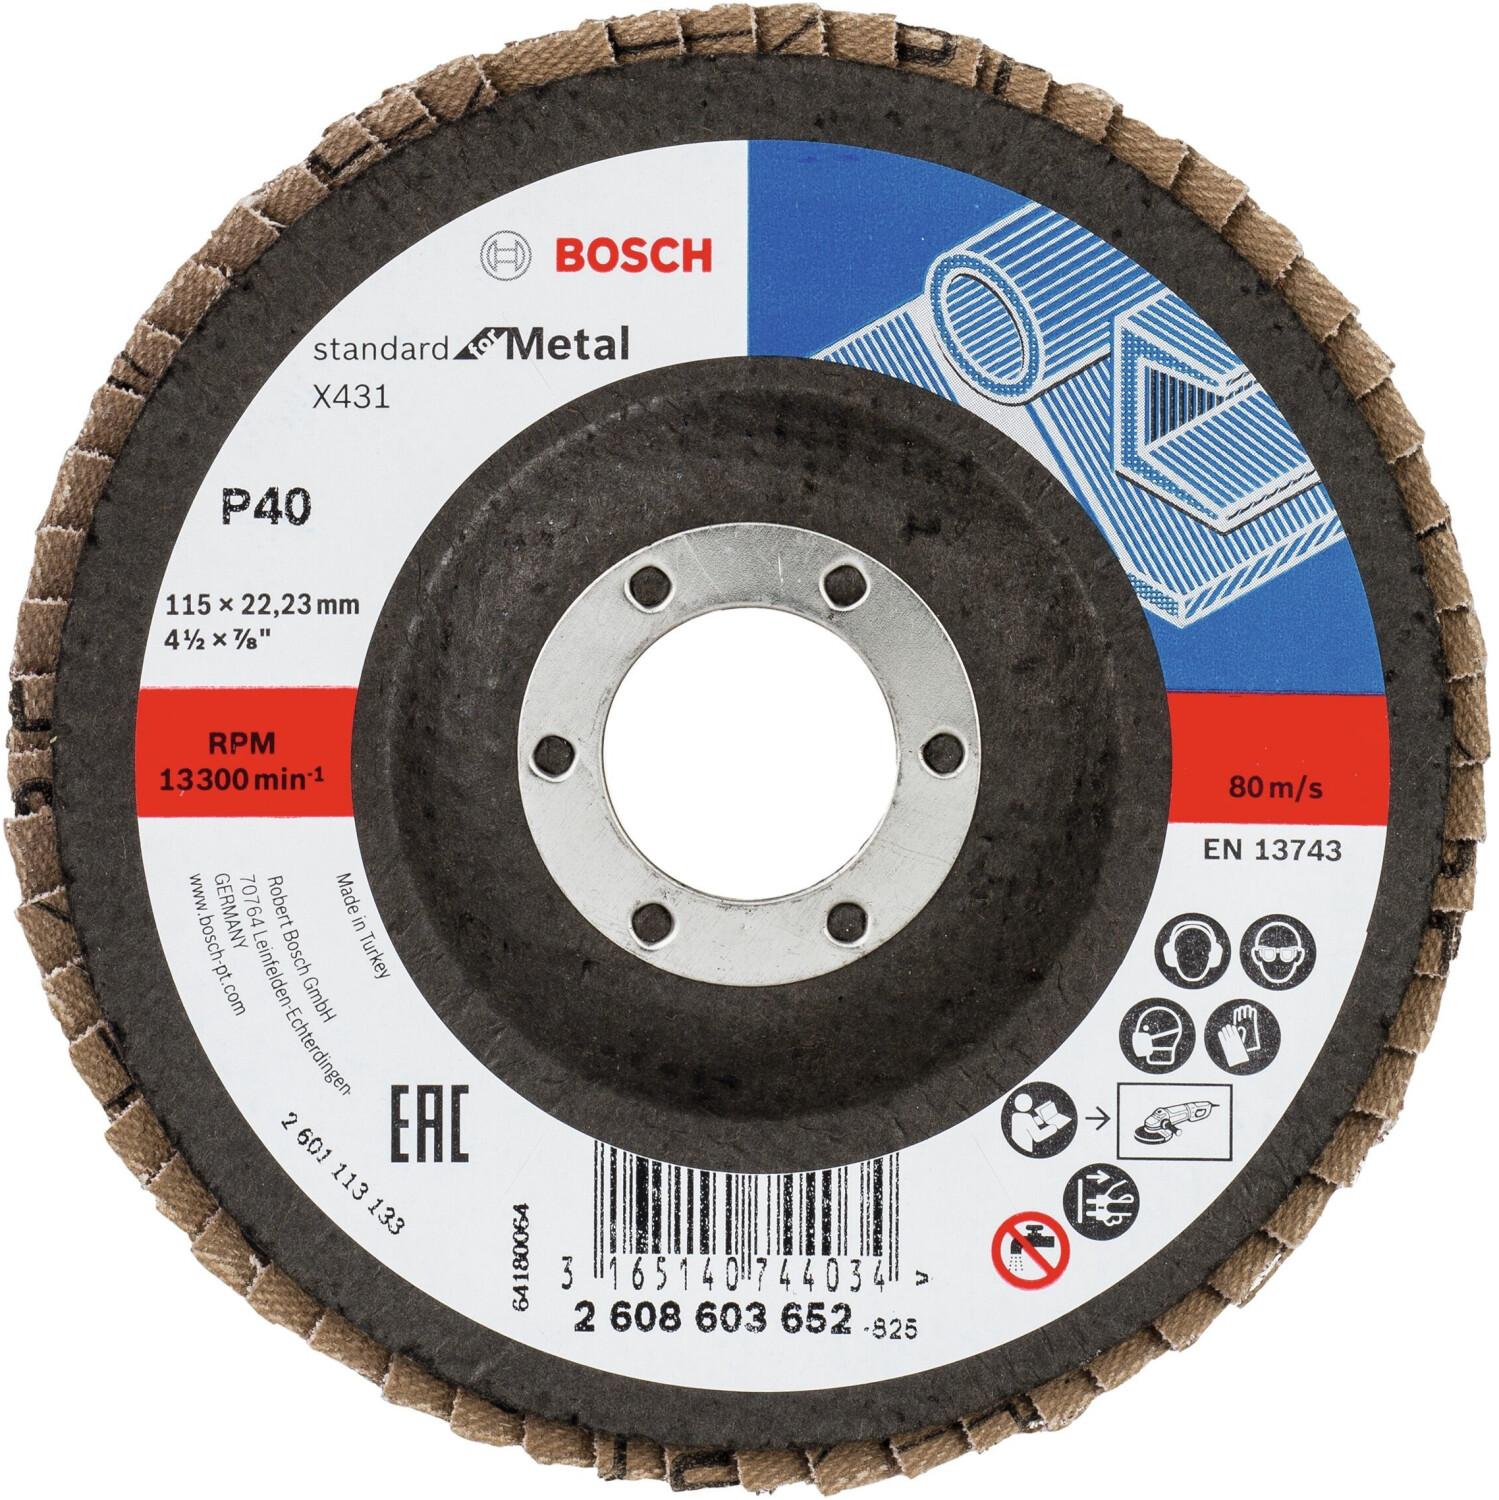 Photos - Abrasive Wheel / Belt Bosch X431 Standard for Metal - K40 D115  (2608603652)